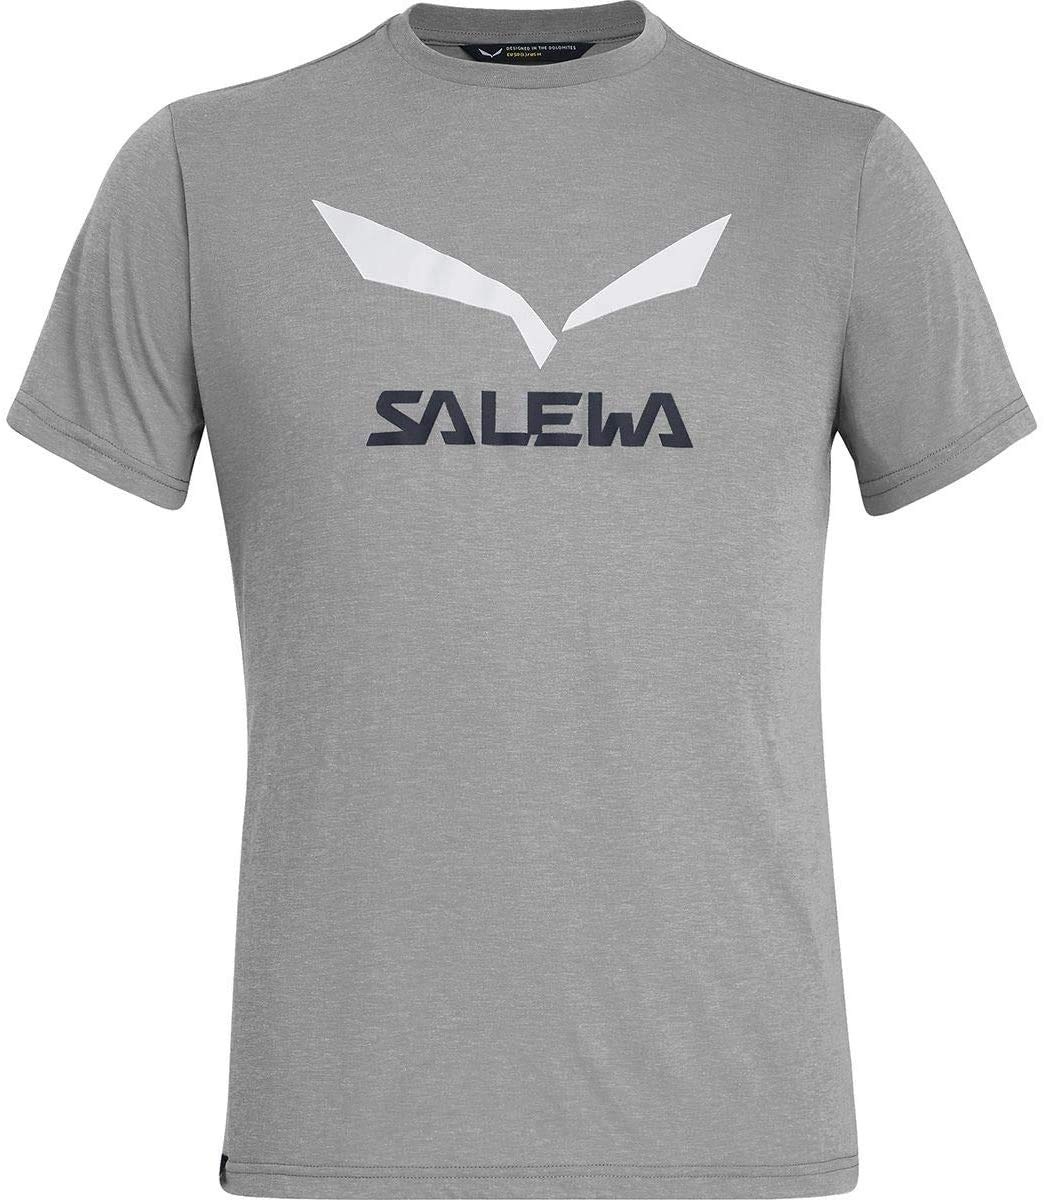 Salewa Herren Blusen und T-Shirts SOLIDLOGO Dry M S/Tee, Heather Grey, 46/S, 00-0000027018